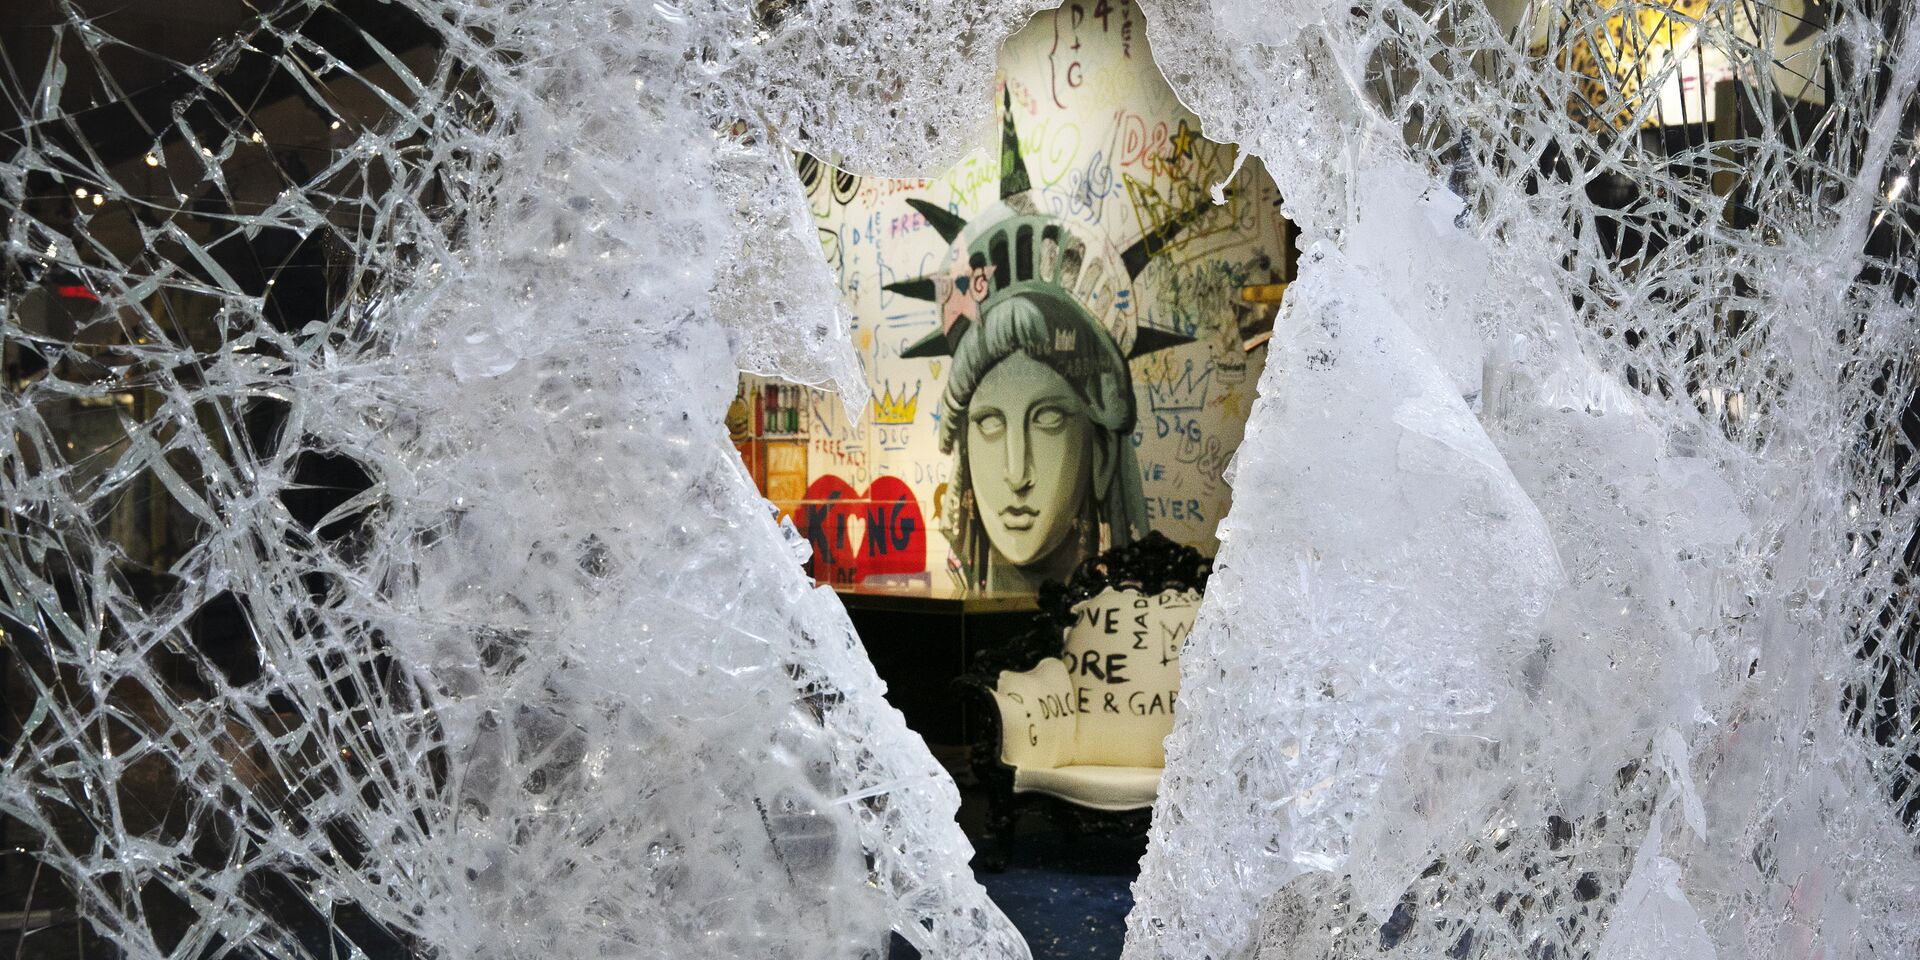 Граффити, изображающее лицо Статуи свободы, через разбитую витрину магазина в Нью-Йорке, США - ИноСМИ, 1920, 18.12.2020